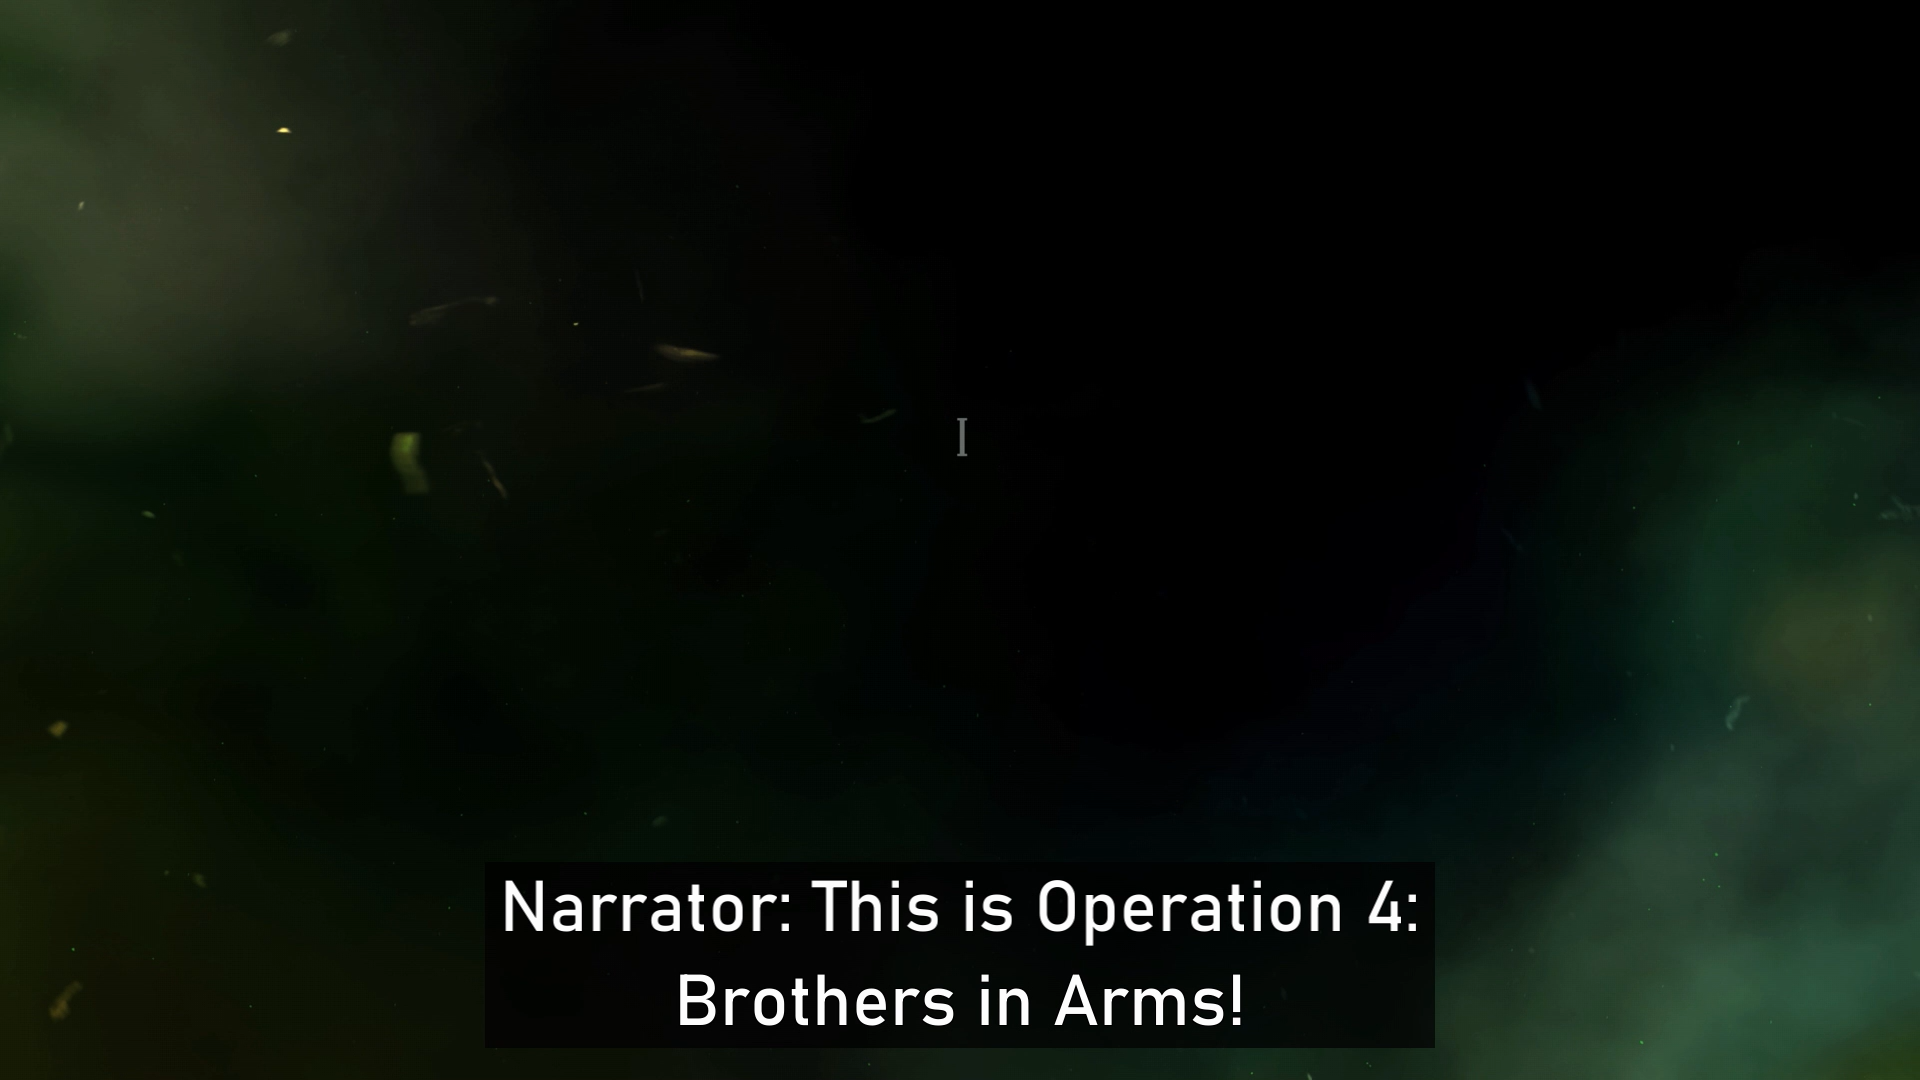 Gears 5 トレーラーの静止画。 画面は下隅に霧がかかっていて黒く、字幕には「ナレーター: これは作戦 4 です: 戦友!」